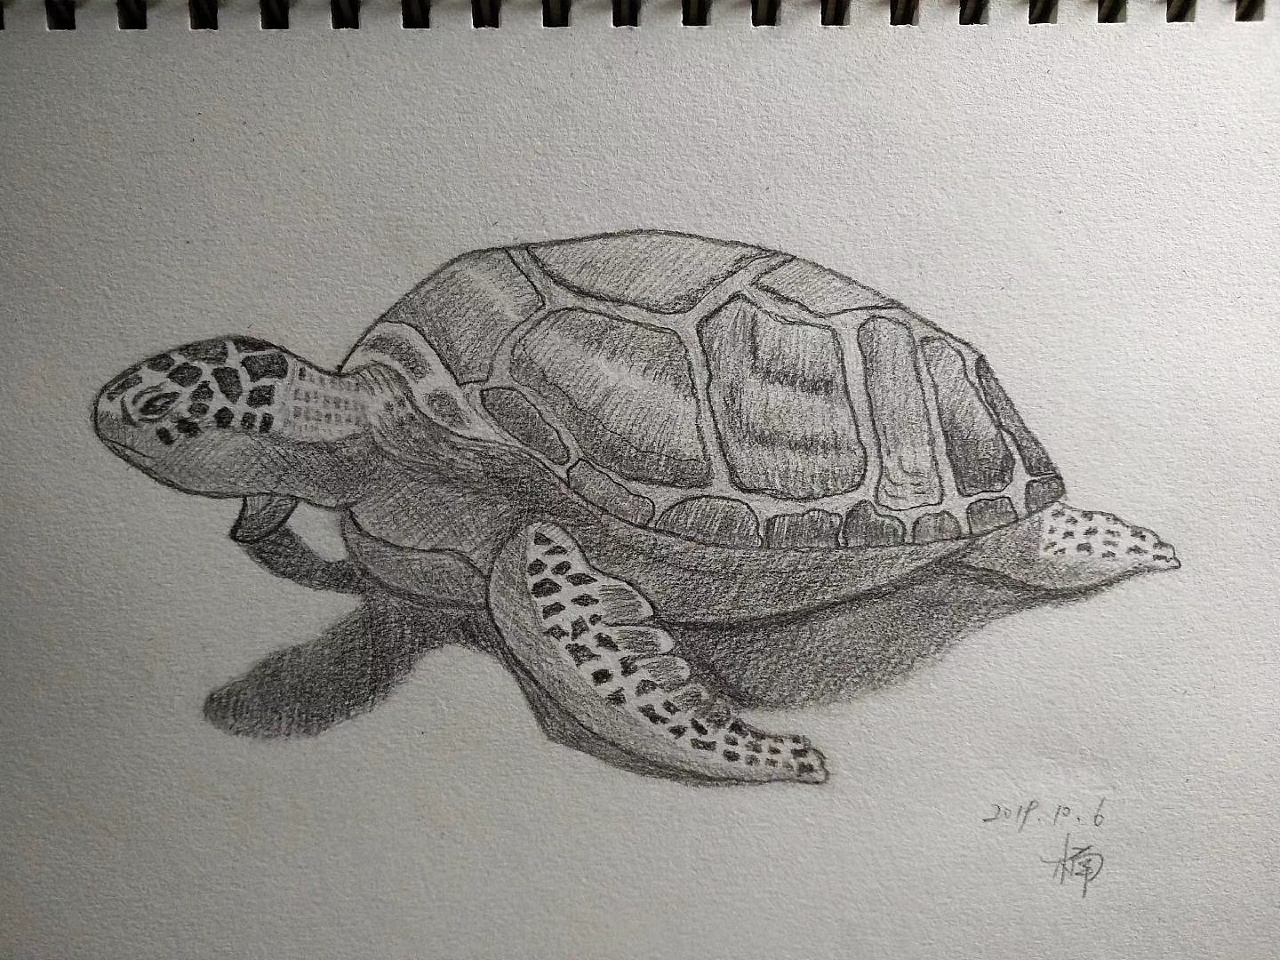 彩色卡通手绘乌龟插图背景图片免费下载 - 觅知网